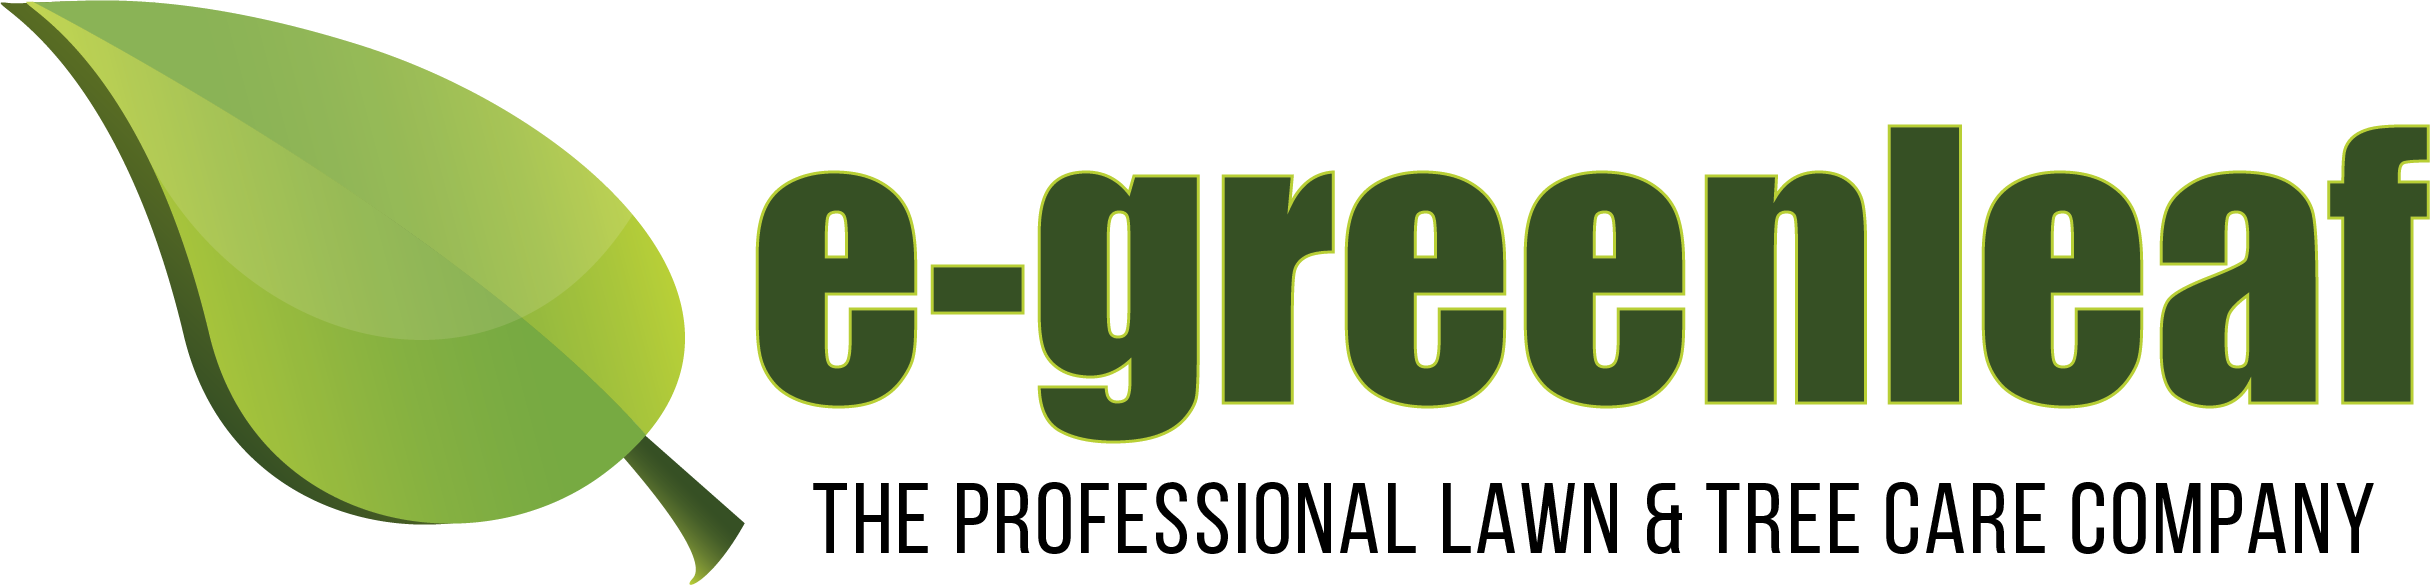 e-greenleaf logo